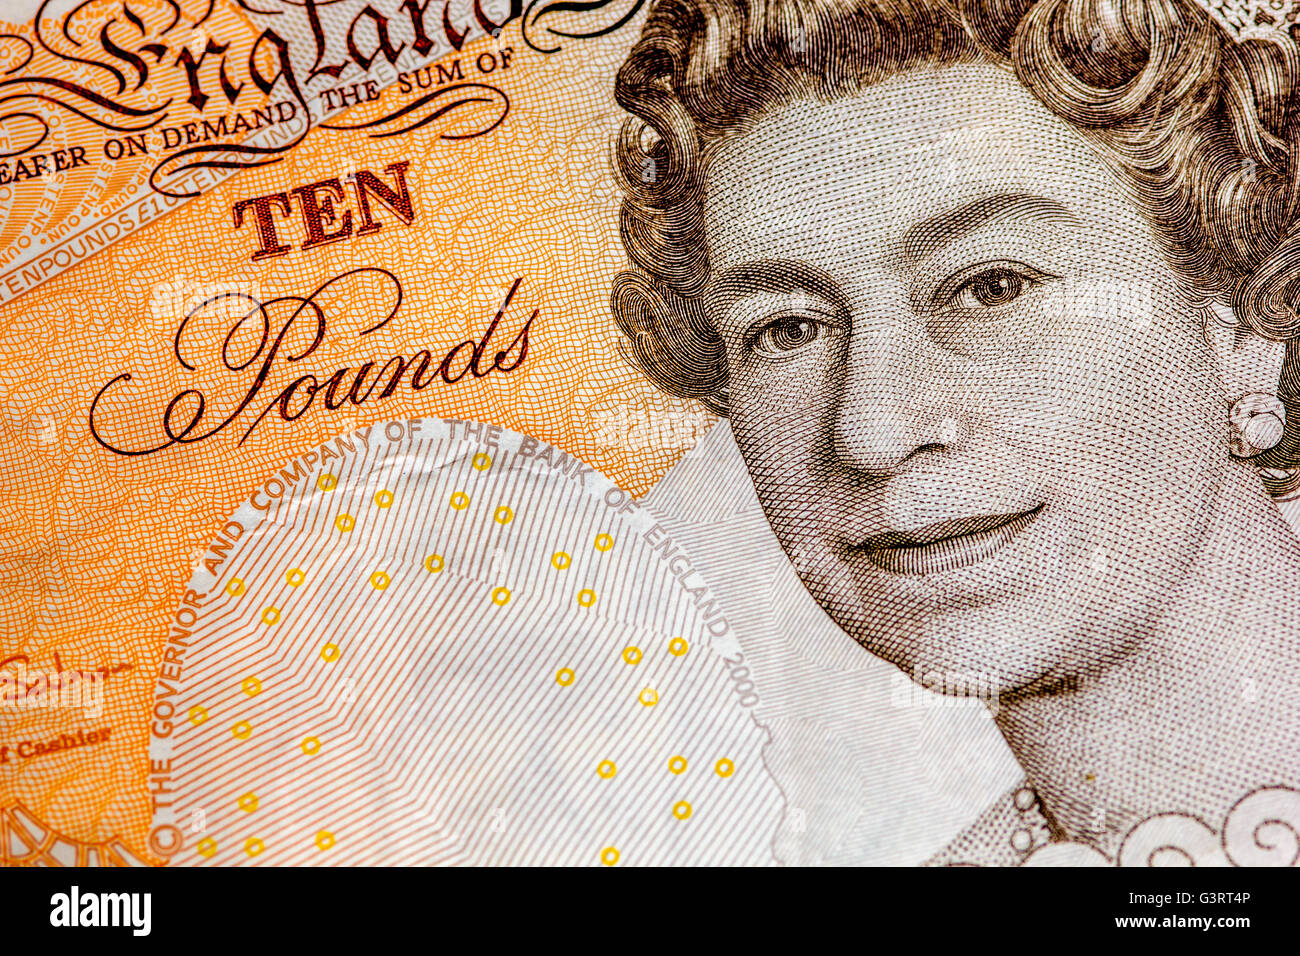 UK pound notes money Stock Photo